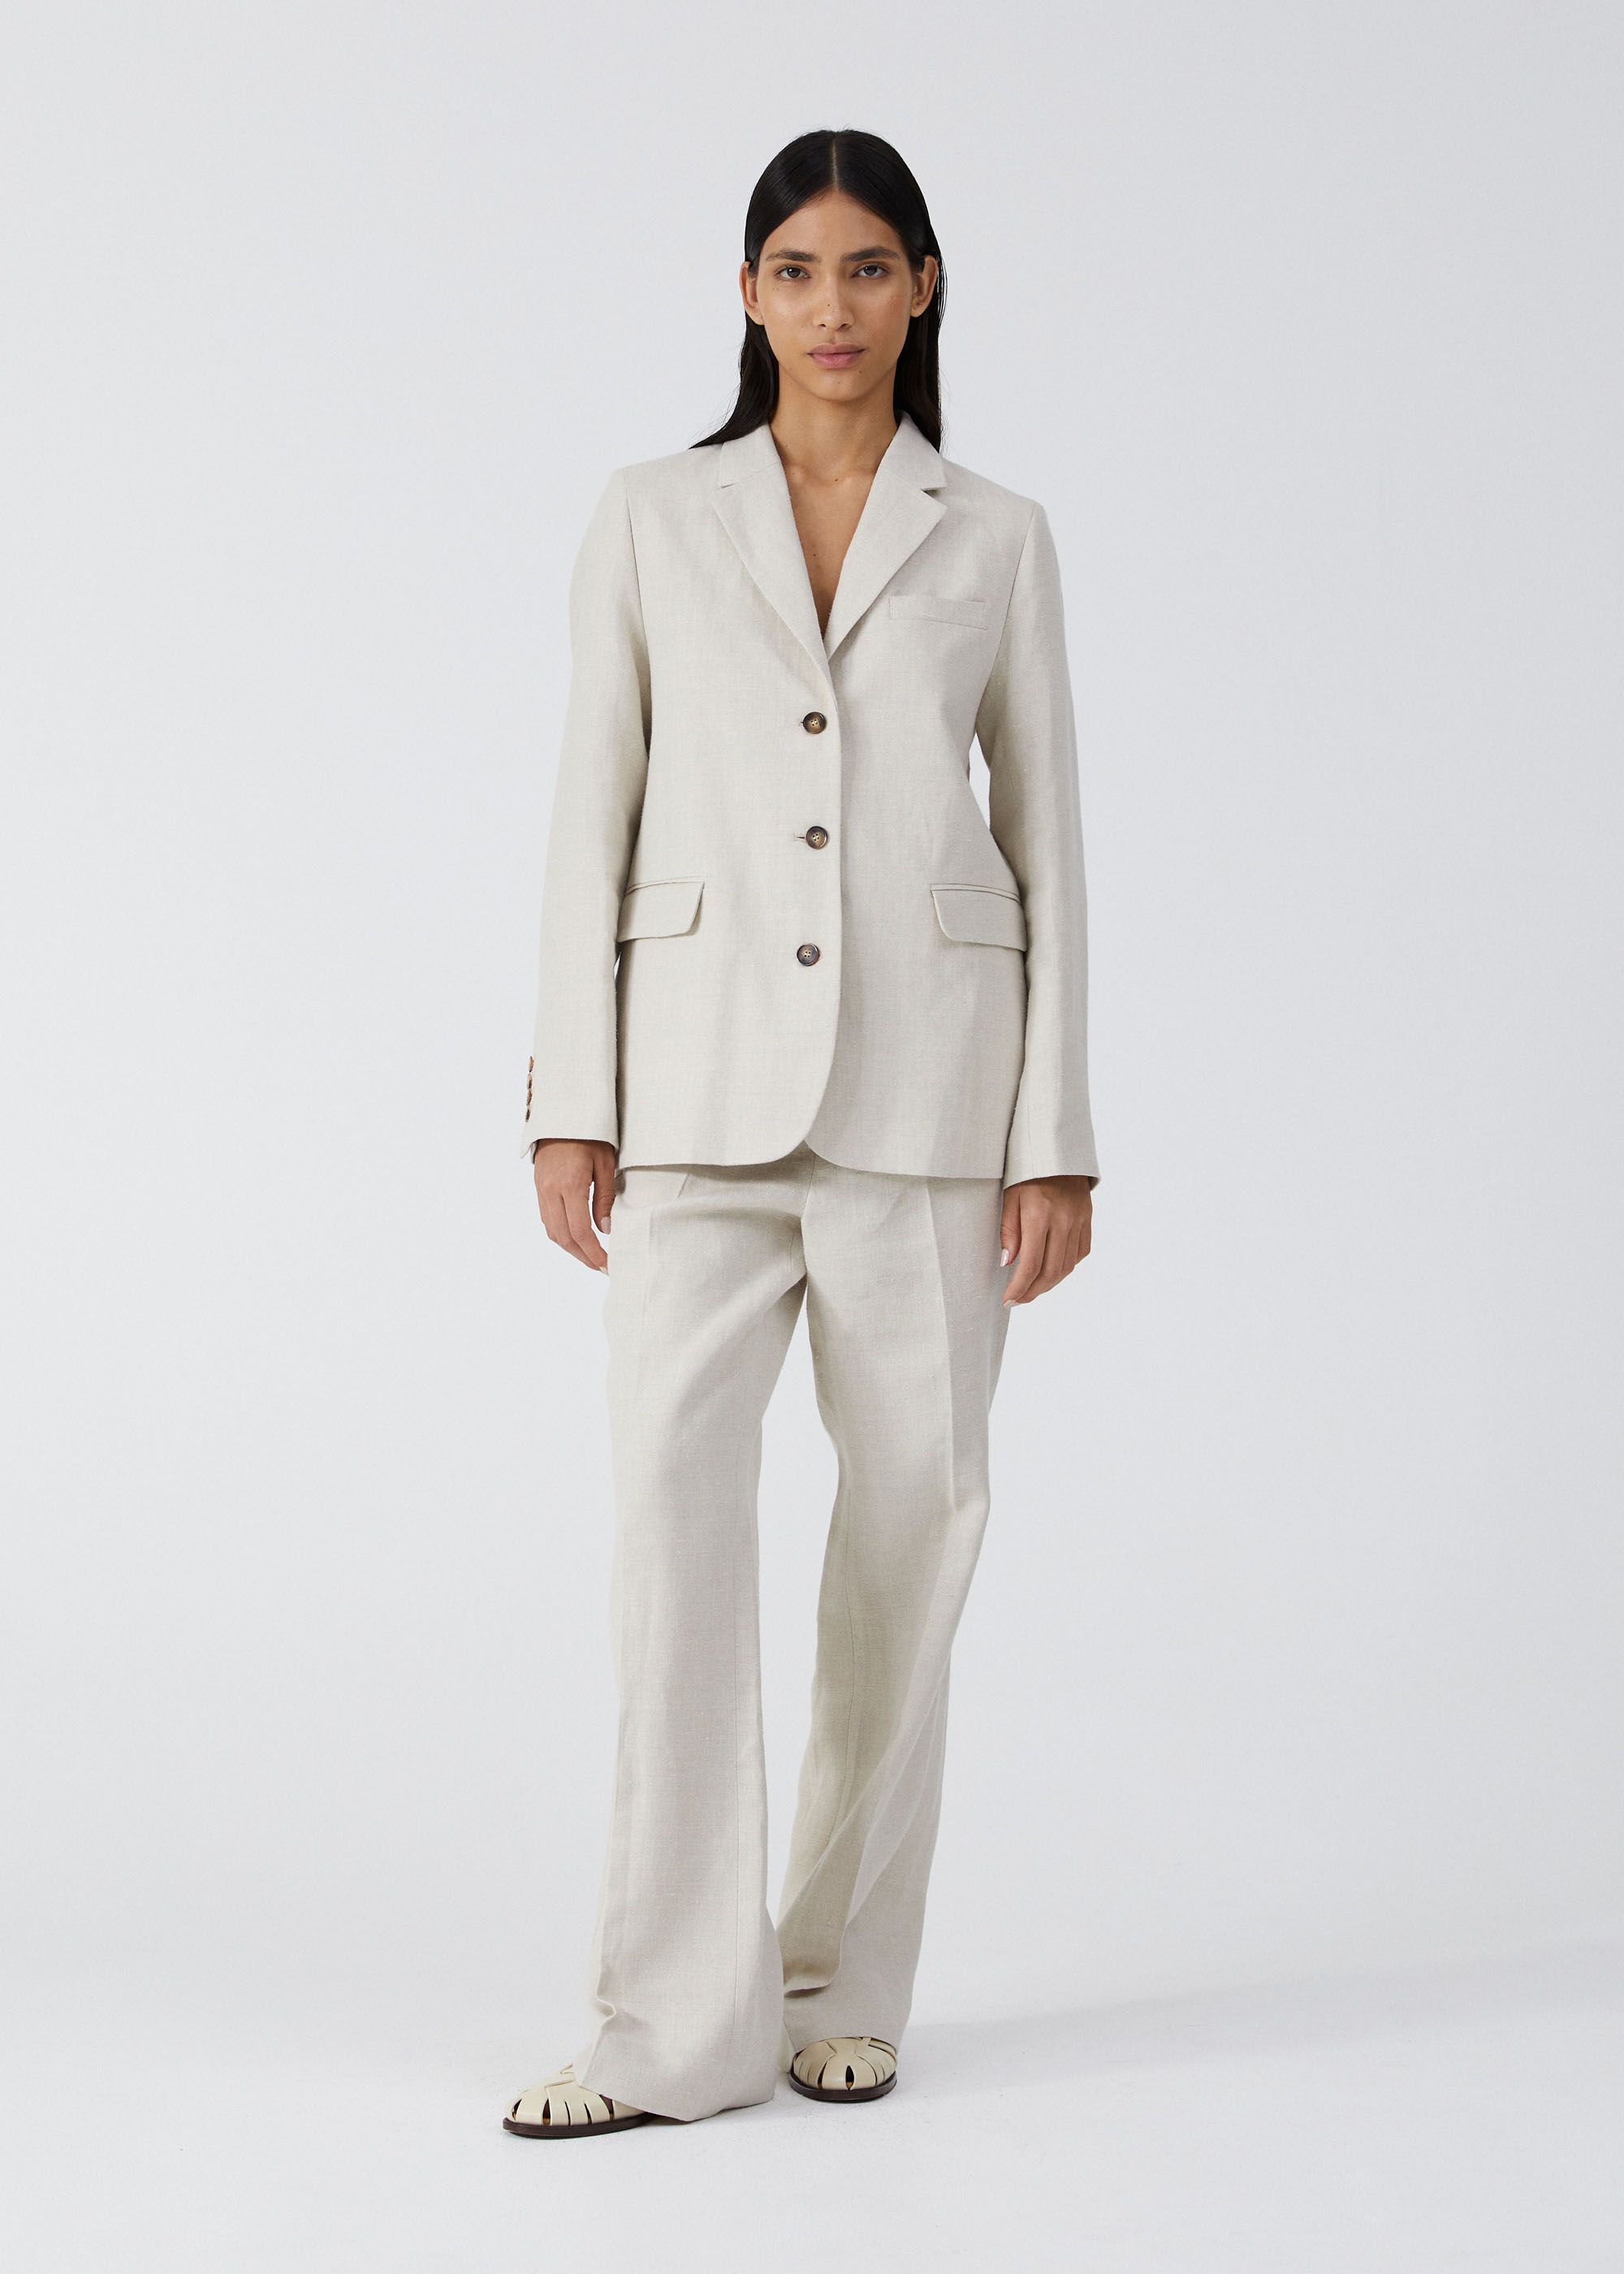 Outerwear - Mason Jacket Tailored Linen